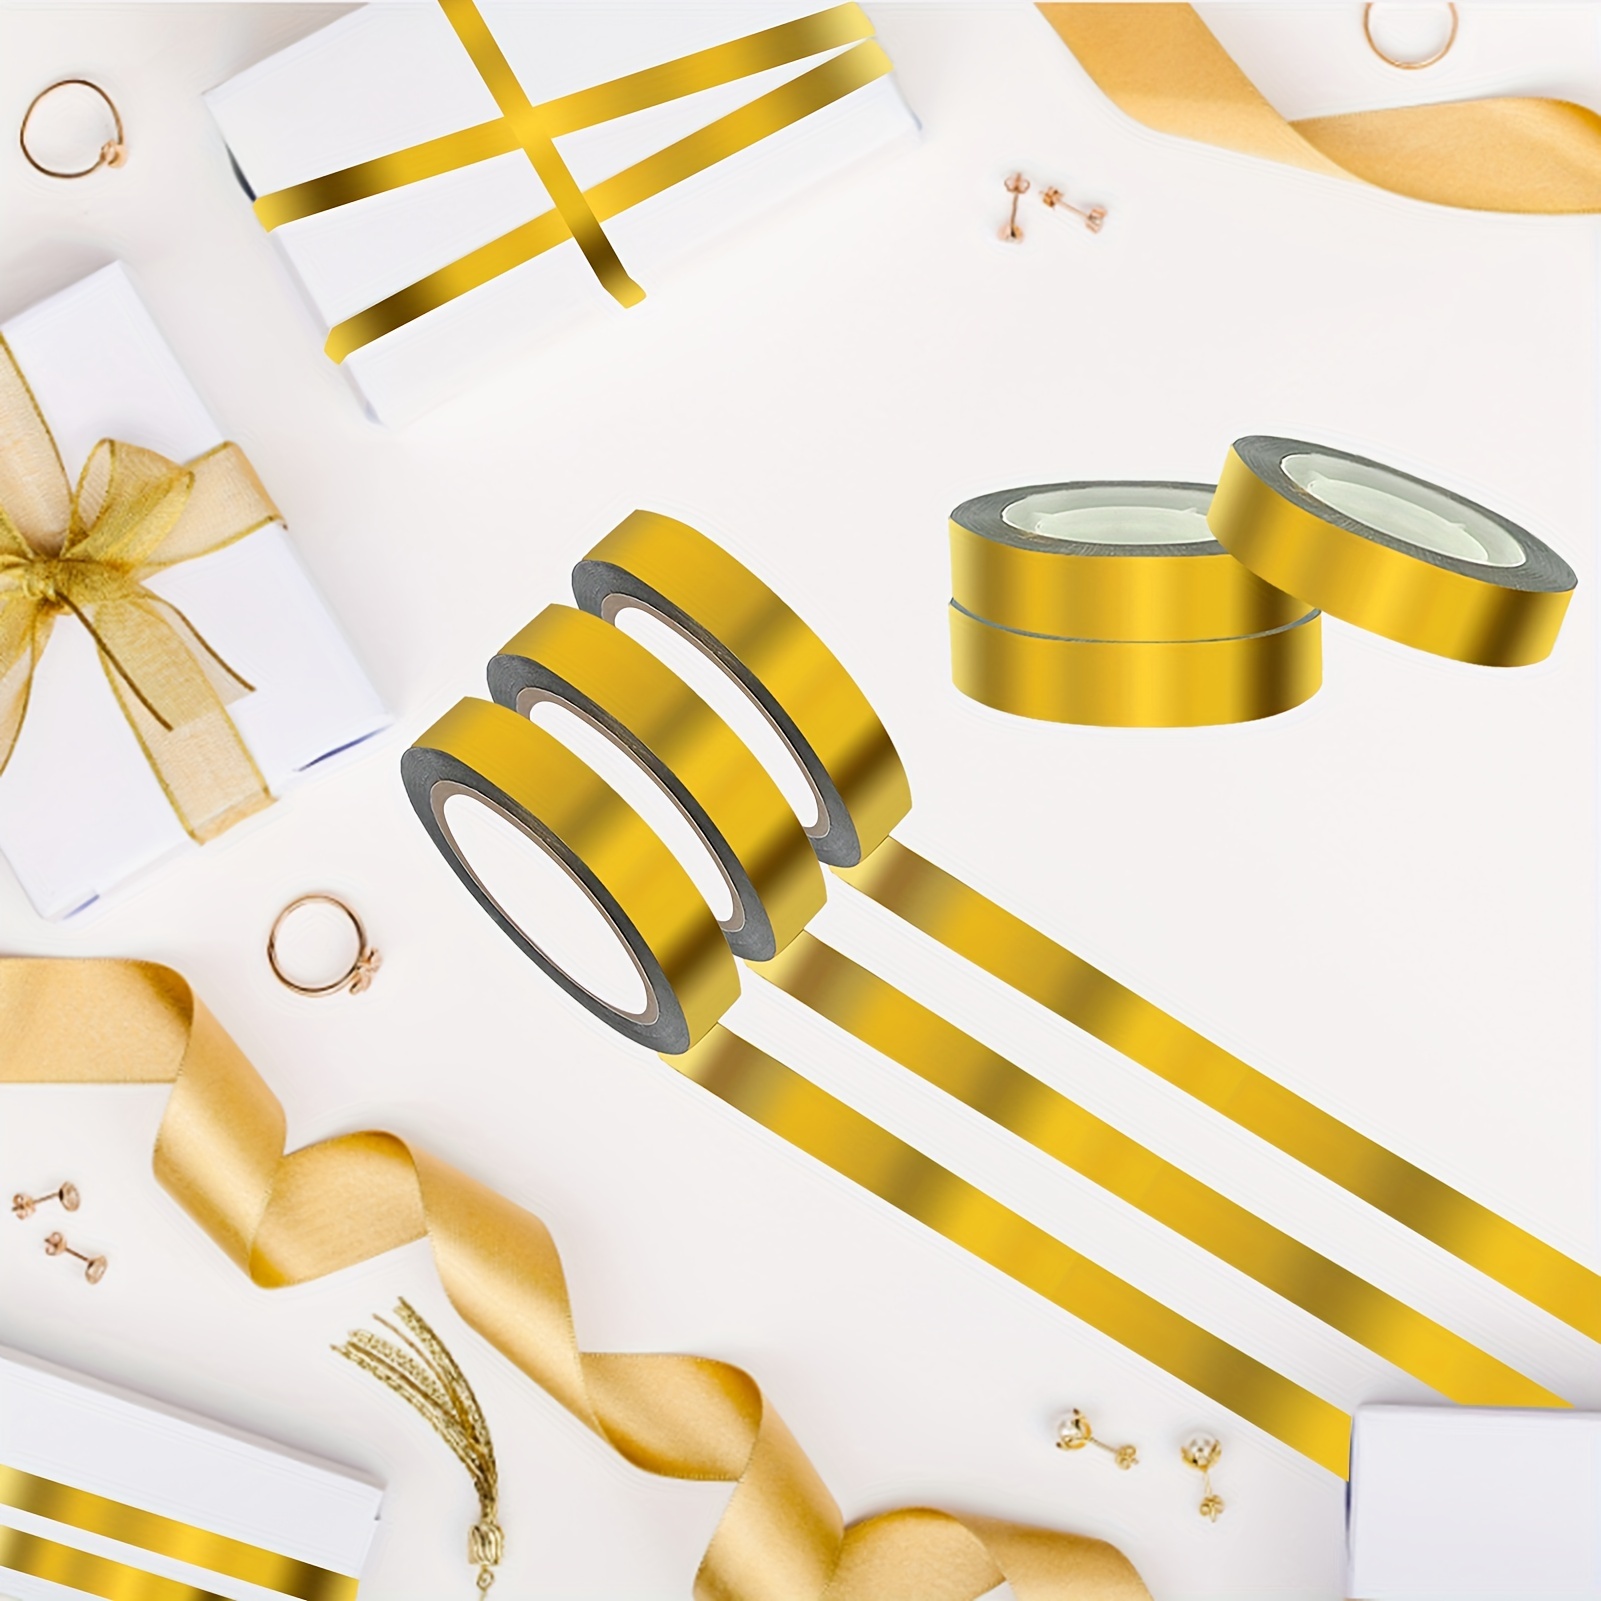  HFKPJRT Cinta Washi dorada, 6 rollos de cinta dorada  autoadhesiva metálica de 165 yardas, cinta de espejo para decoración de  pared, marco de TV y manualidades (1/2 pulgada) : Arte y Manualidades